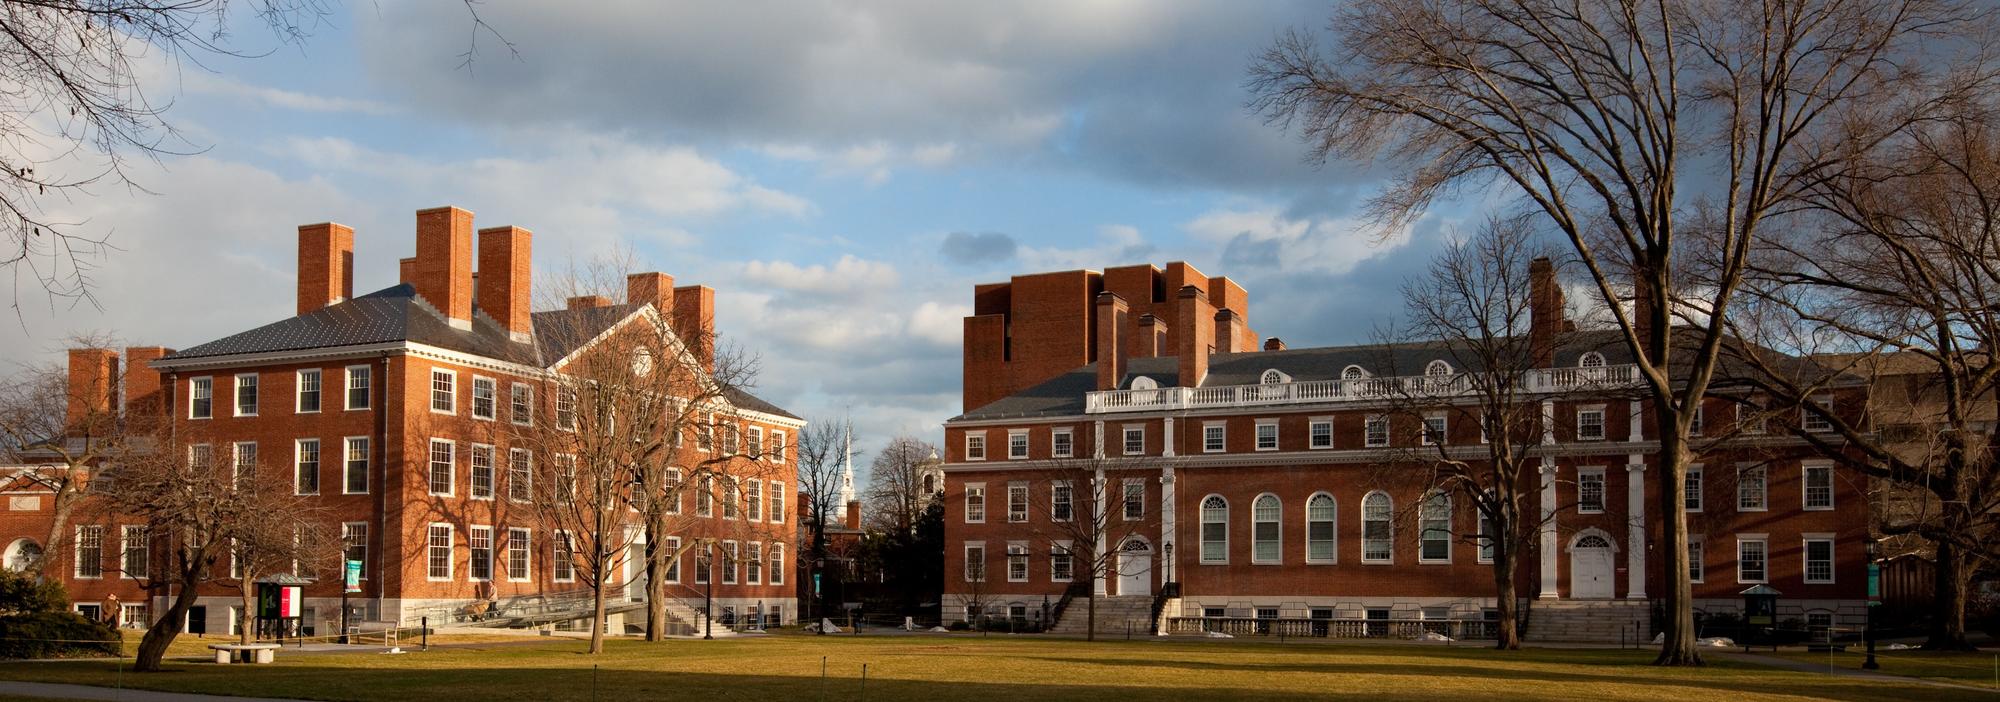 Conant Hall, Harvard University (Wikimedia Commons)